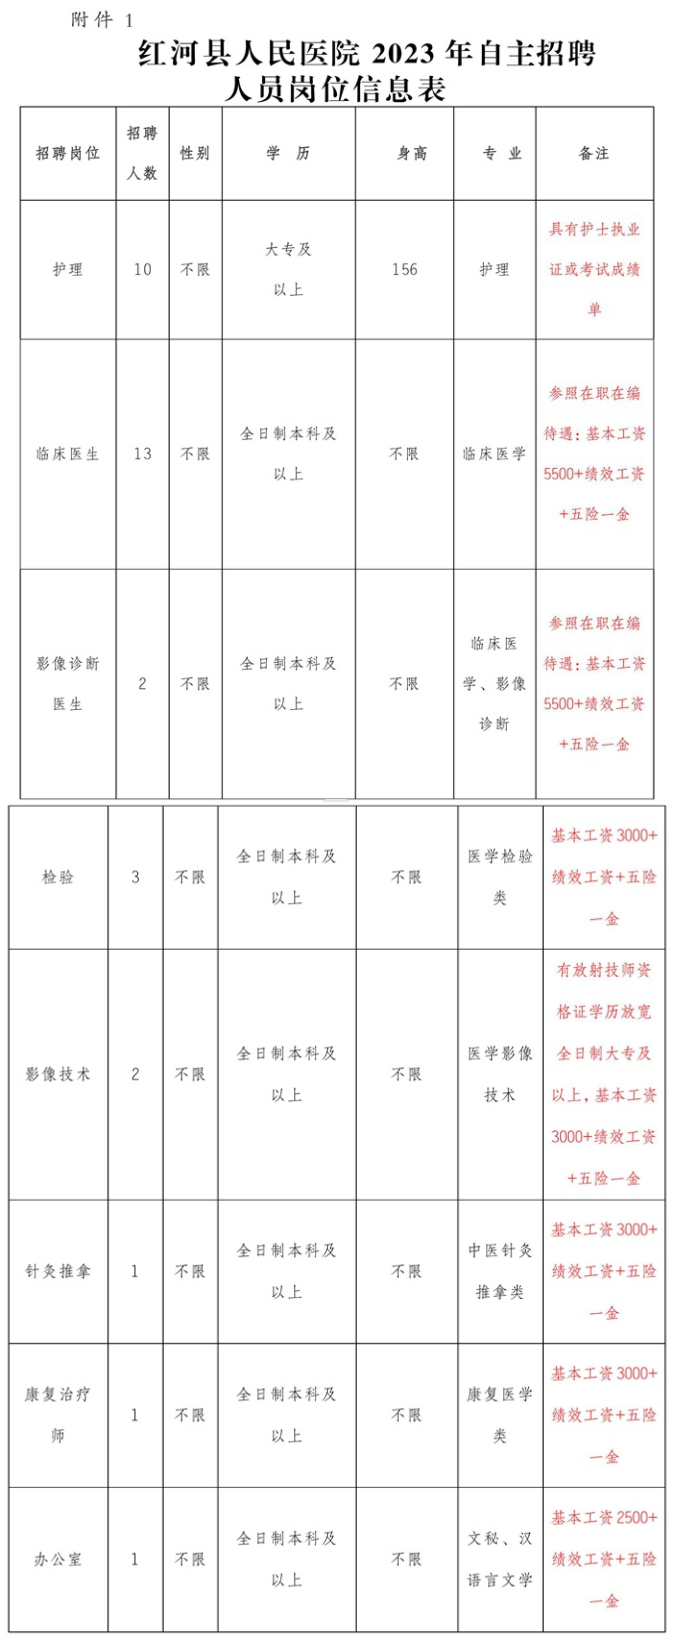 红河县人民医院 2023 年第四季度自主招聘人员公告 - 红河县人民医院.png